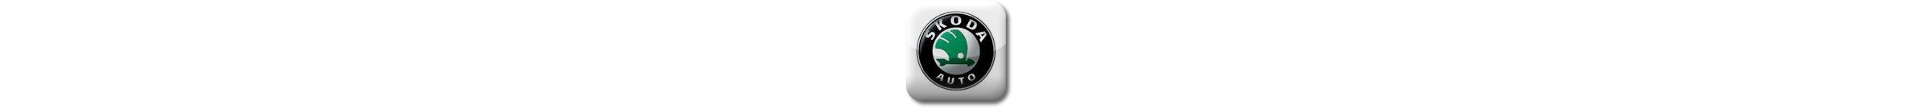 Boitier additionnel Skoda Diesel Evolussem